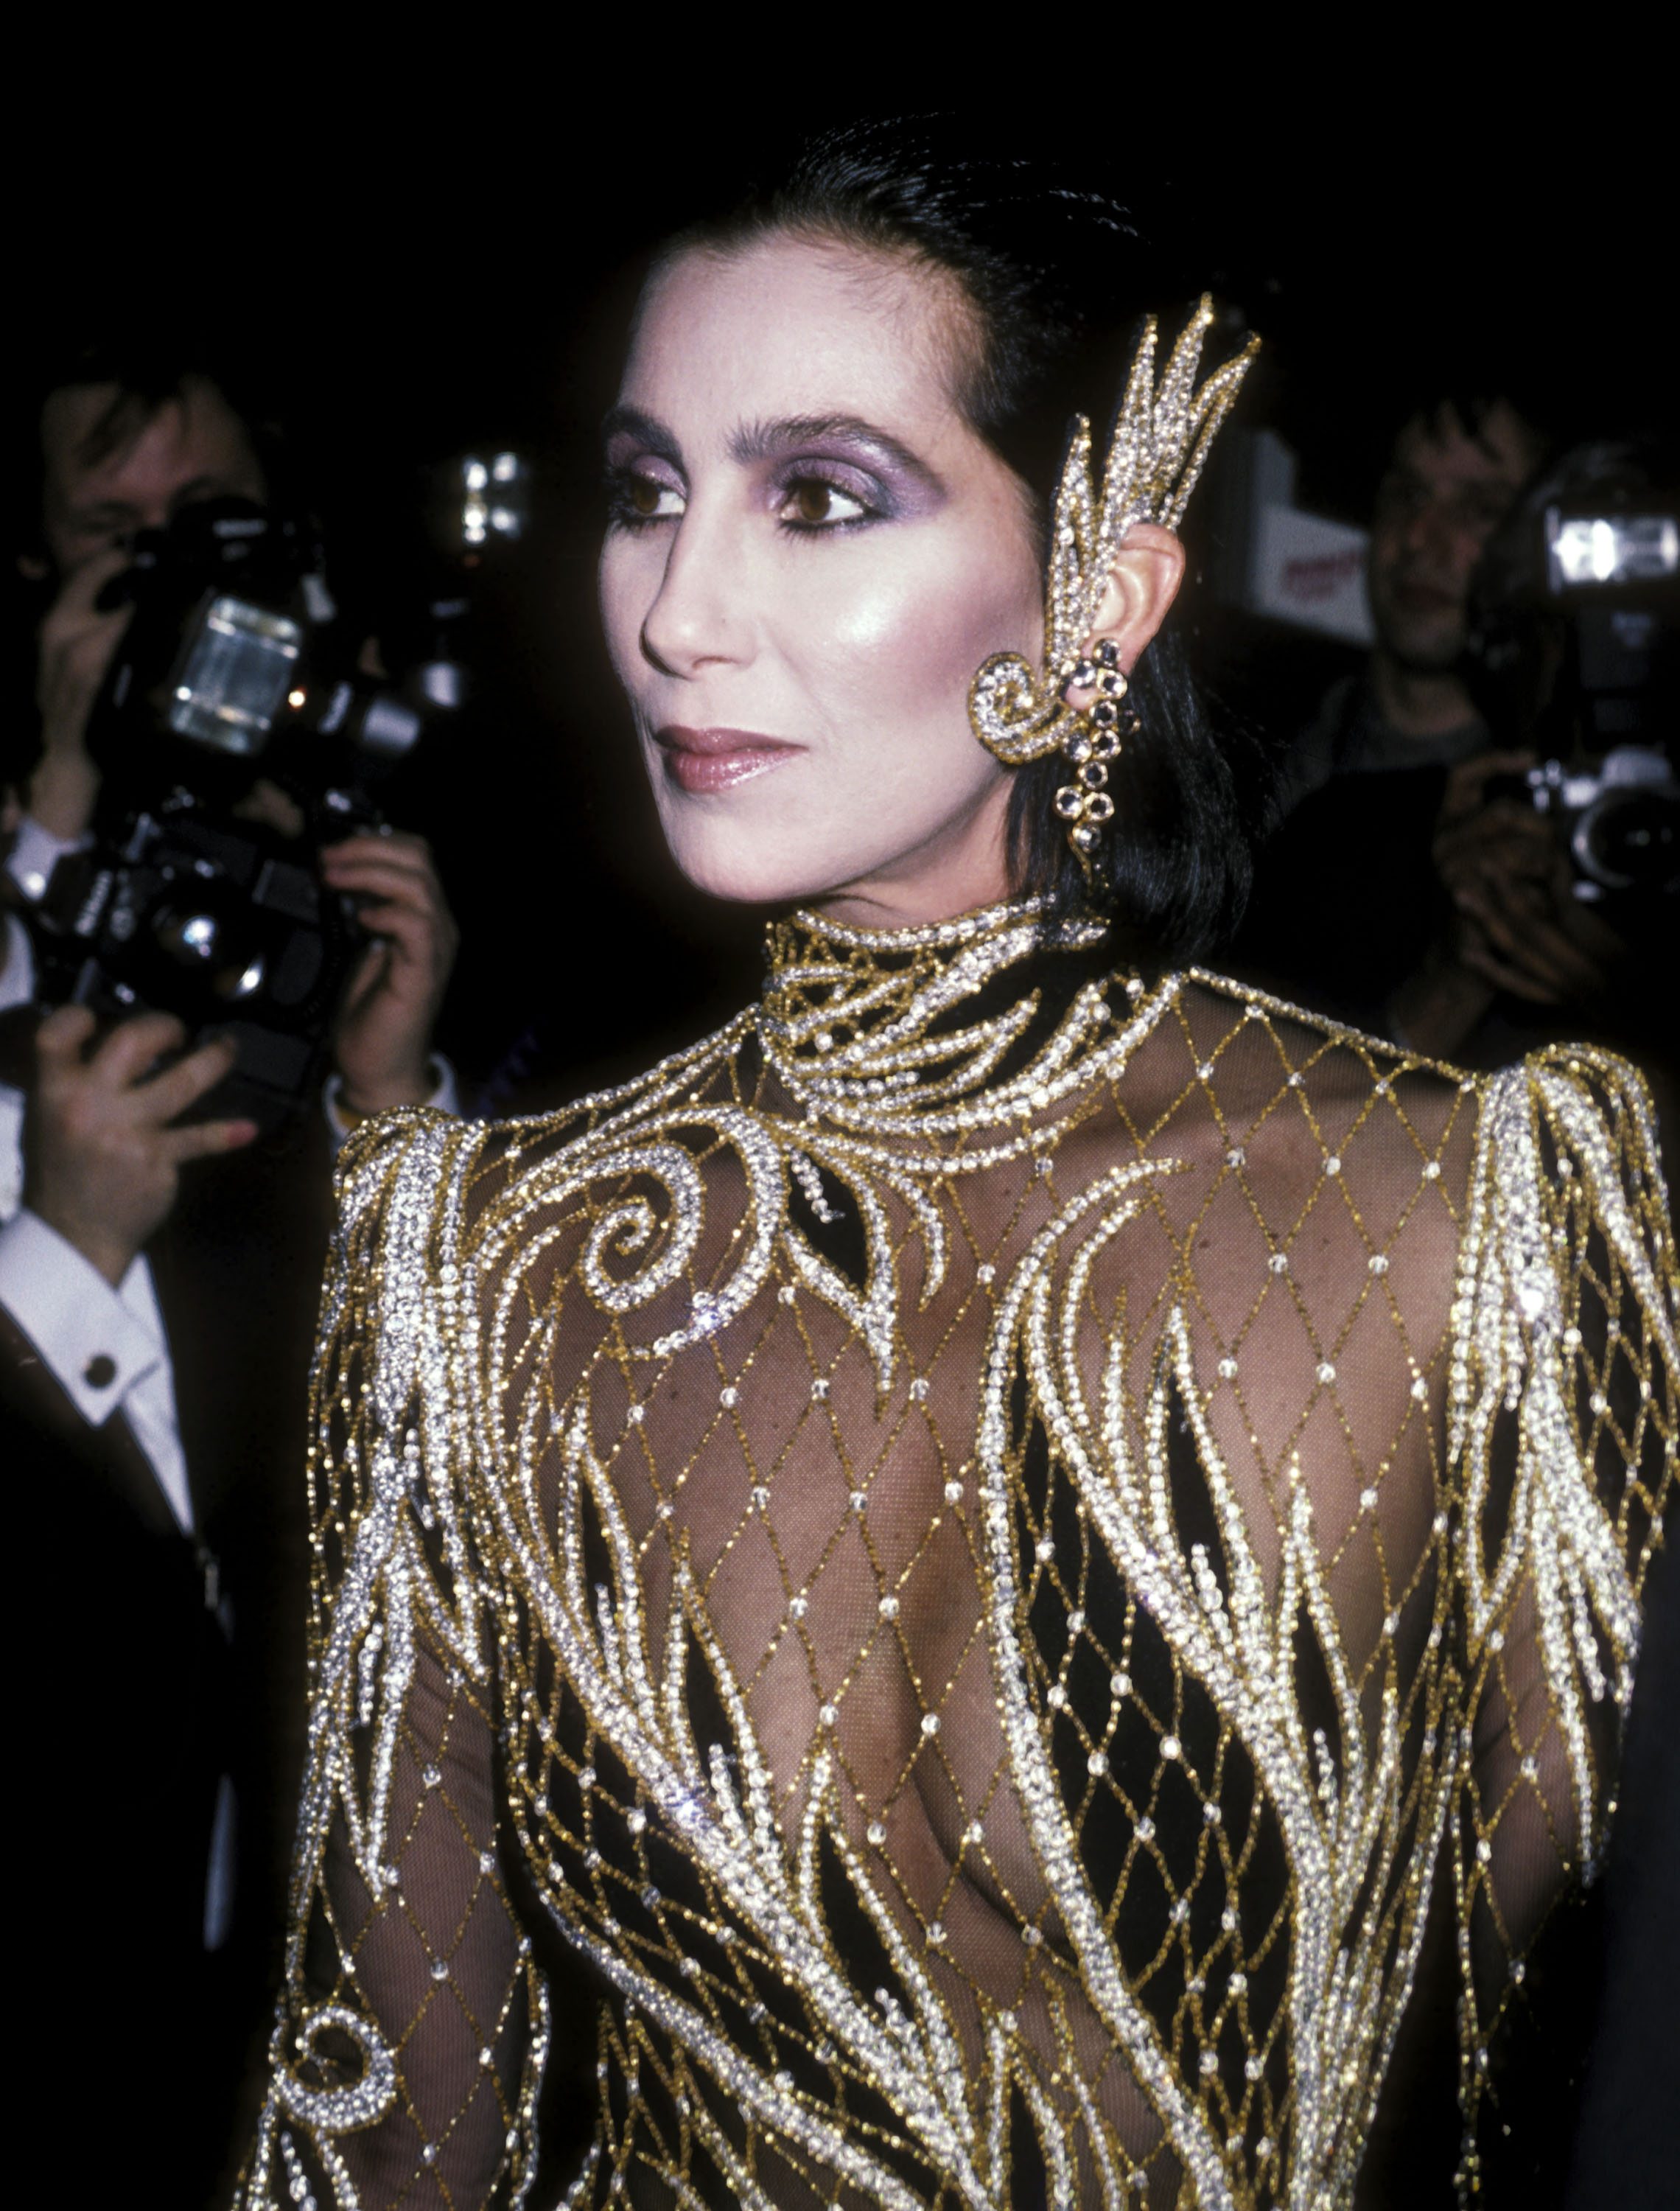 Cher Cher au gala du Metropolitan Museum's Costume Institute pour l’exposition Costumes of Royal India, le 9 décembre 1985 à New York. Photo par Ron Galella/Ron Galella Collection via Getty Images.